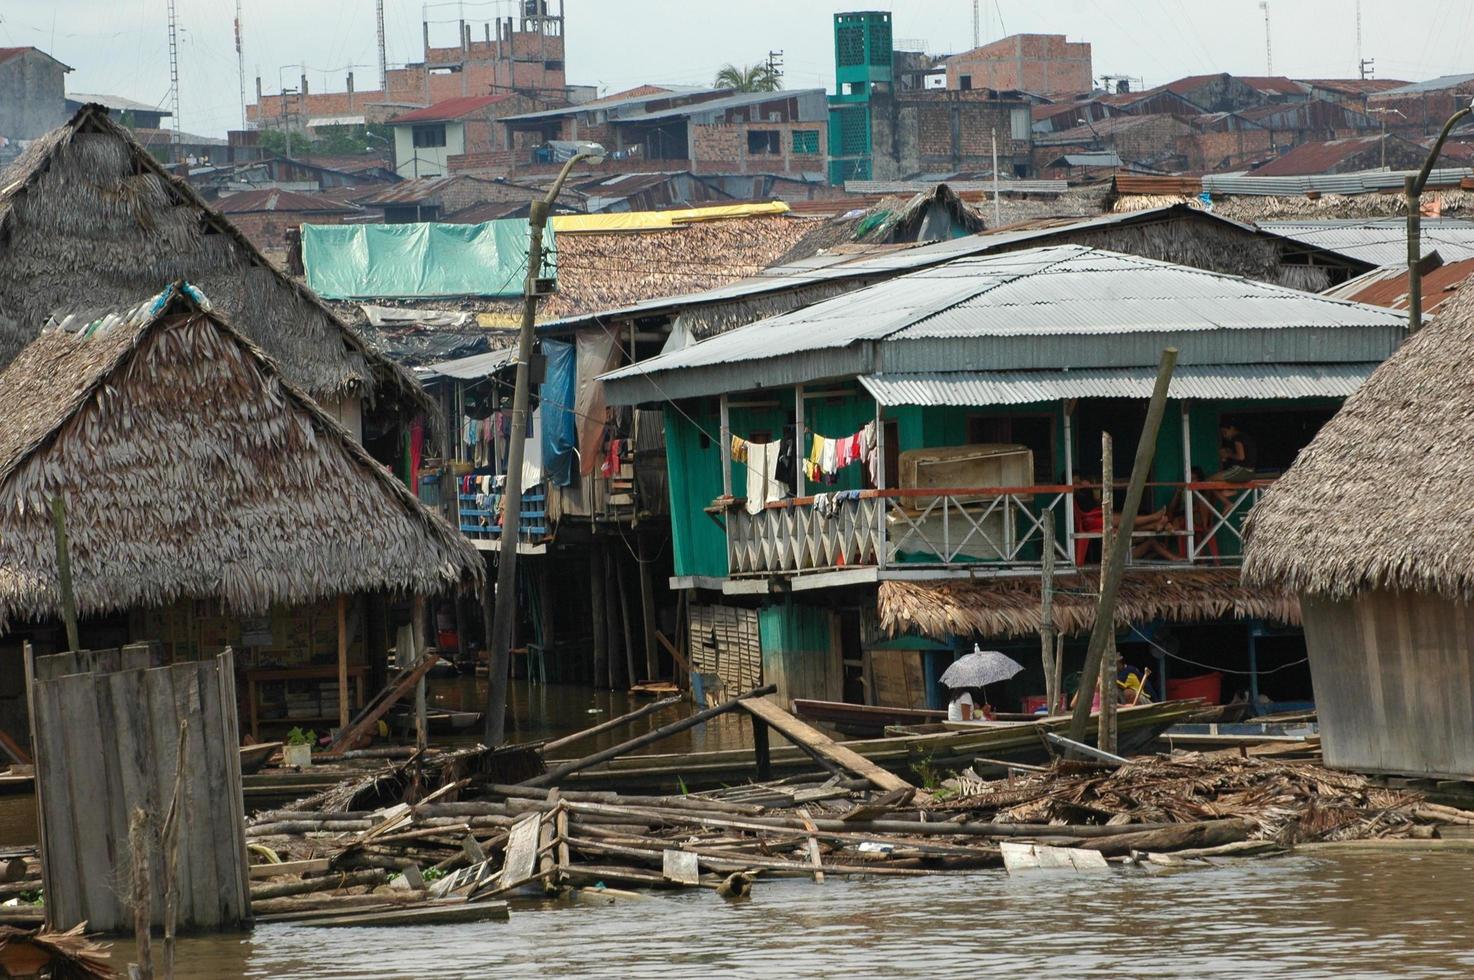 slummen i byn Belen i Iquitos foto